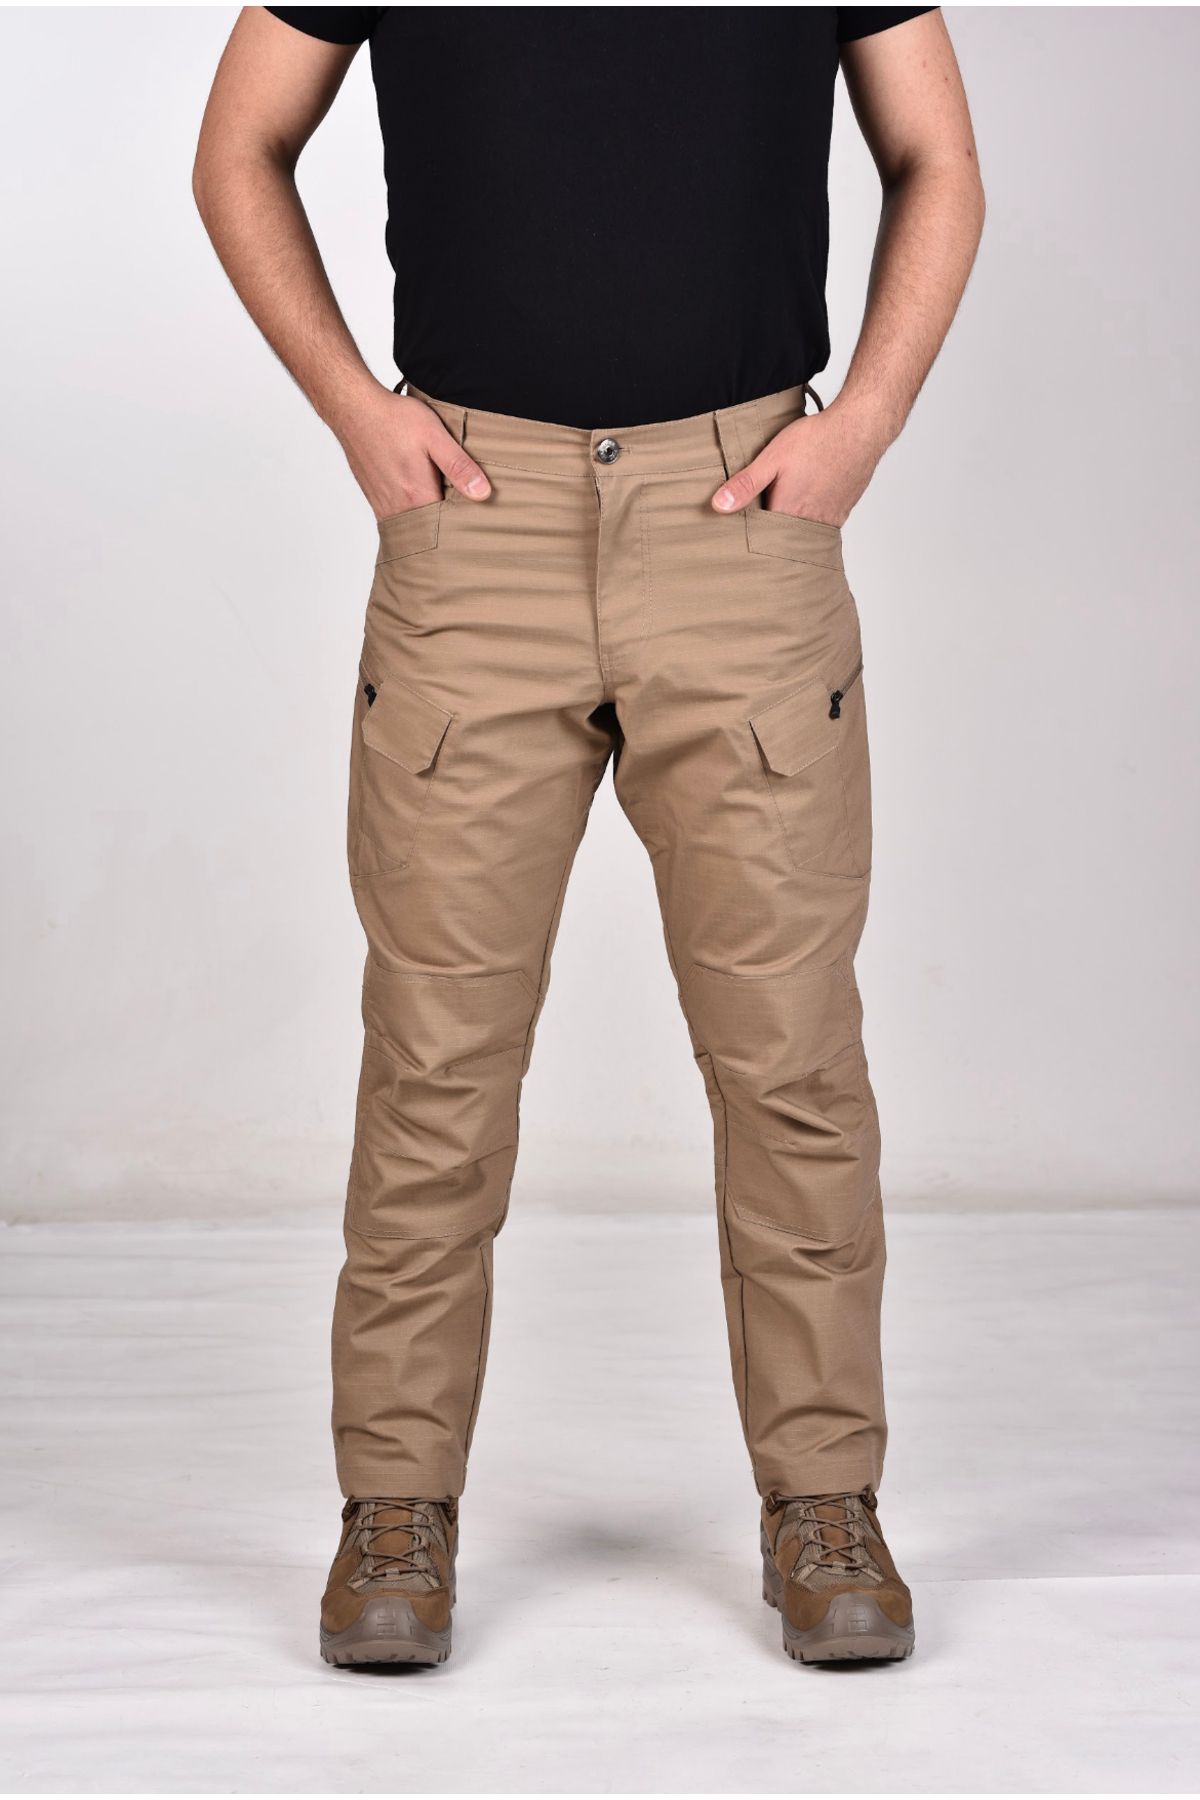 Seba Collection Erkek Bej Likralı Ripstop Outdoor & Spor Giyim Taktik Pantolon